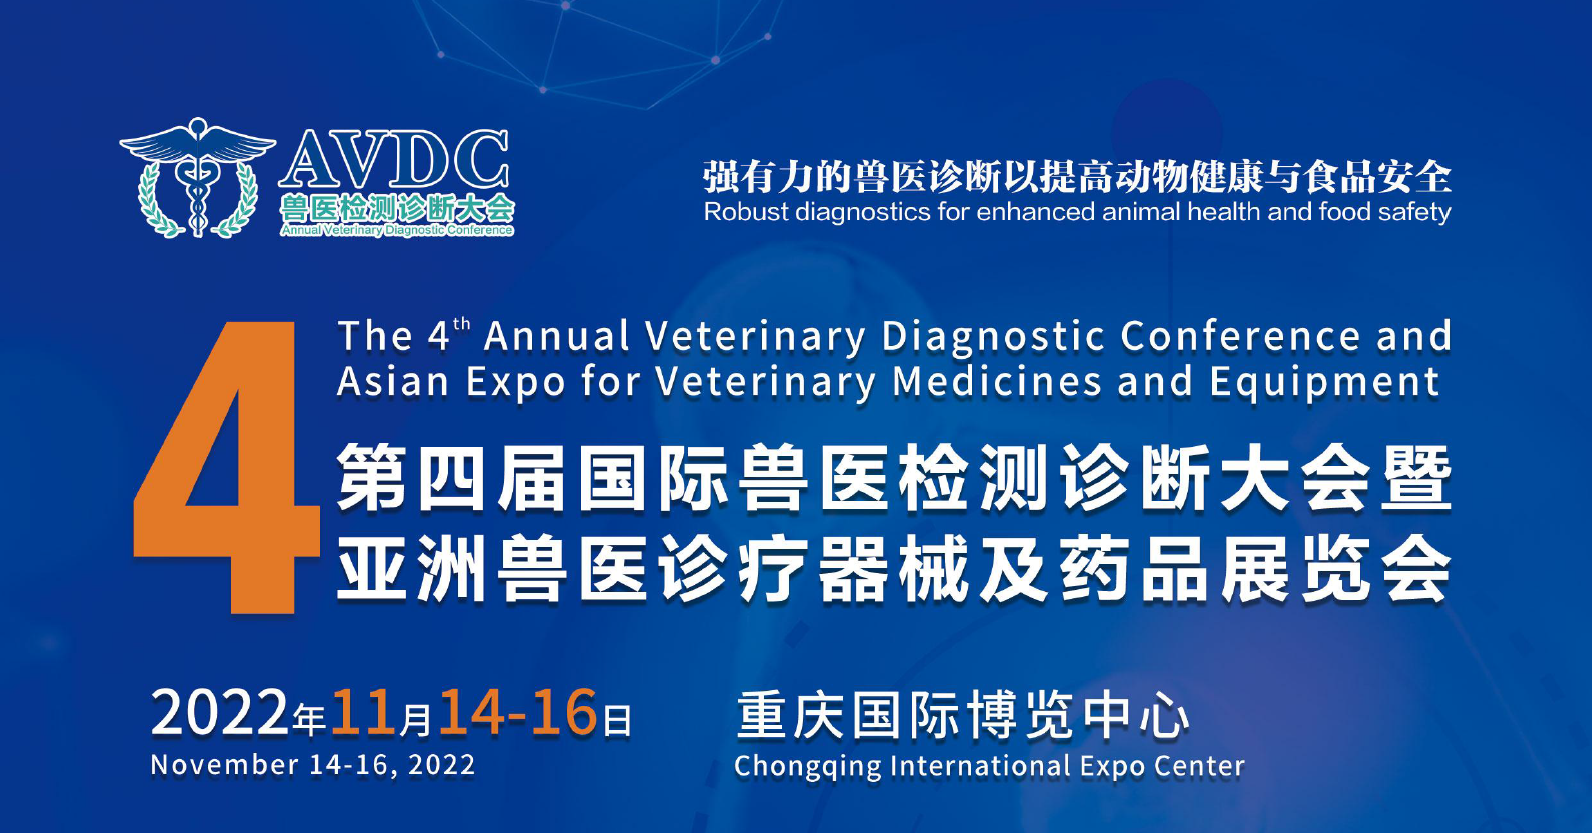 第四屆國際獸醫檢測診斷大會暨亞洲獸醫診療器械及藥品展覽會將于11月14-16日舉行